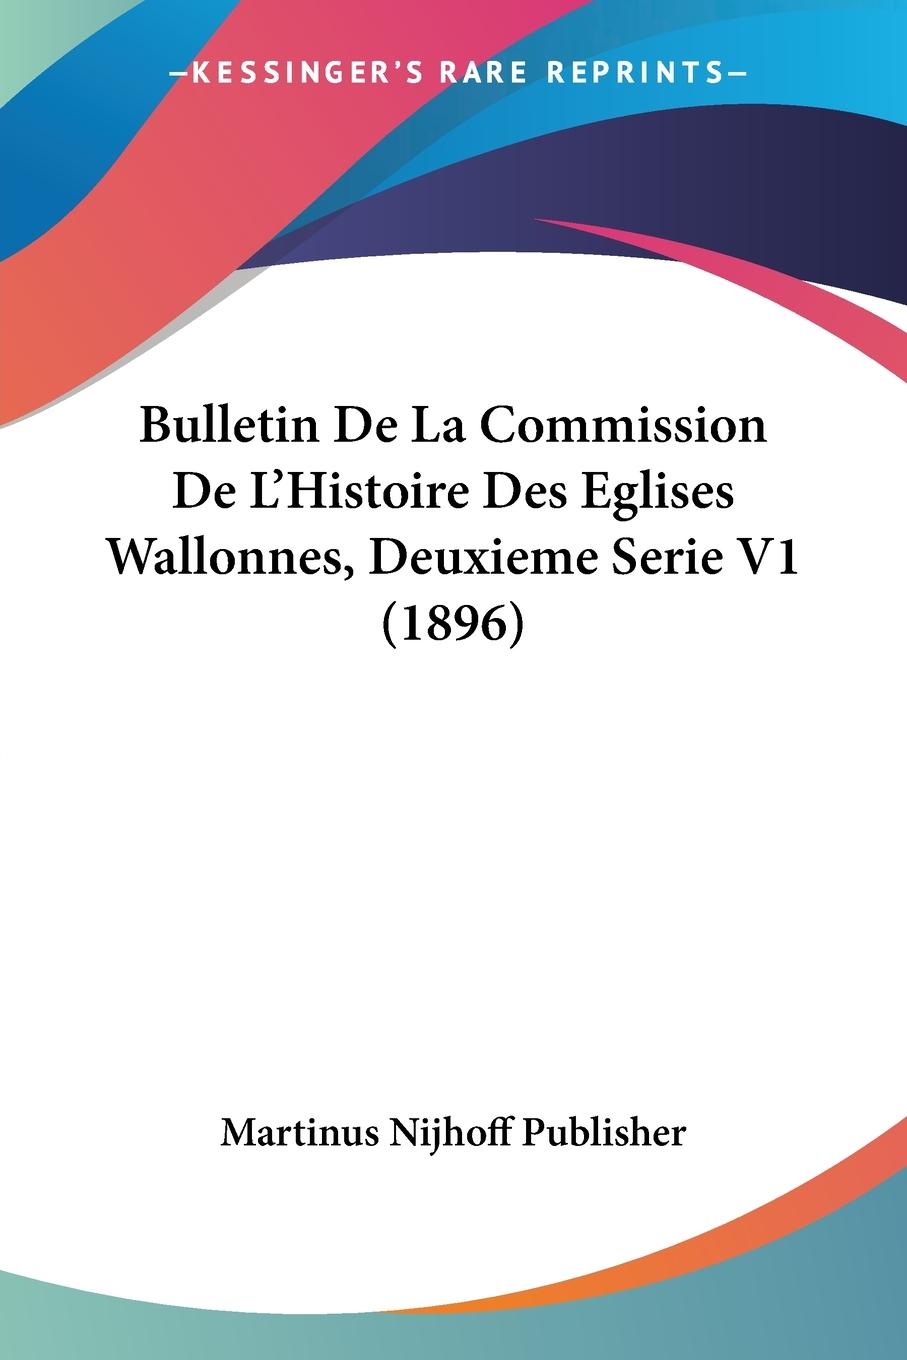 Bulletin De La Commission De L Histoire Des Eglises Wallonnes, Deuxieme Serie V1 (1896) - Martinus Nijhoff Publisher